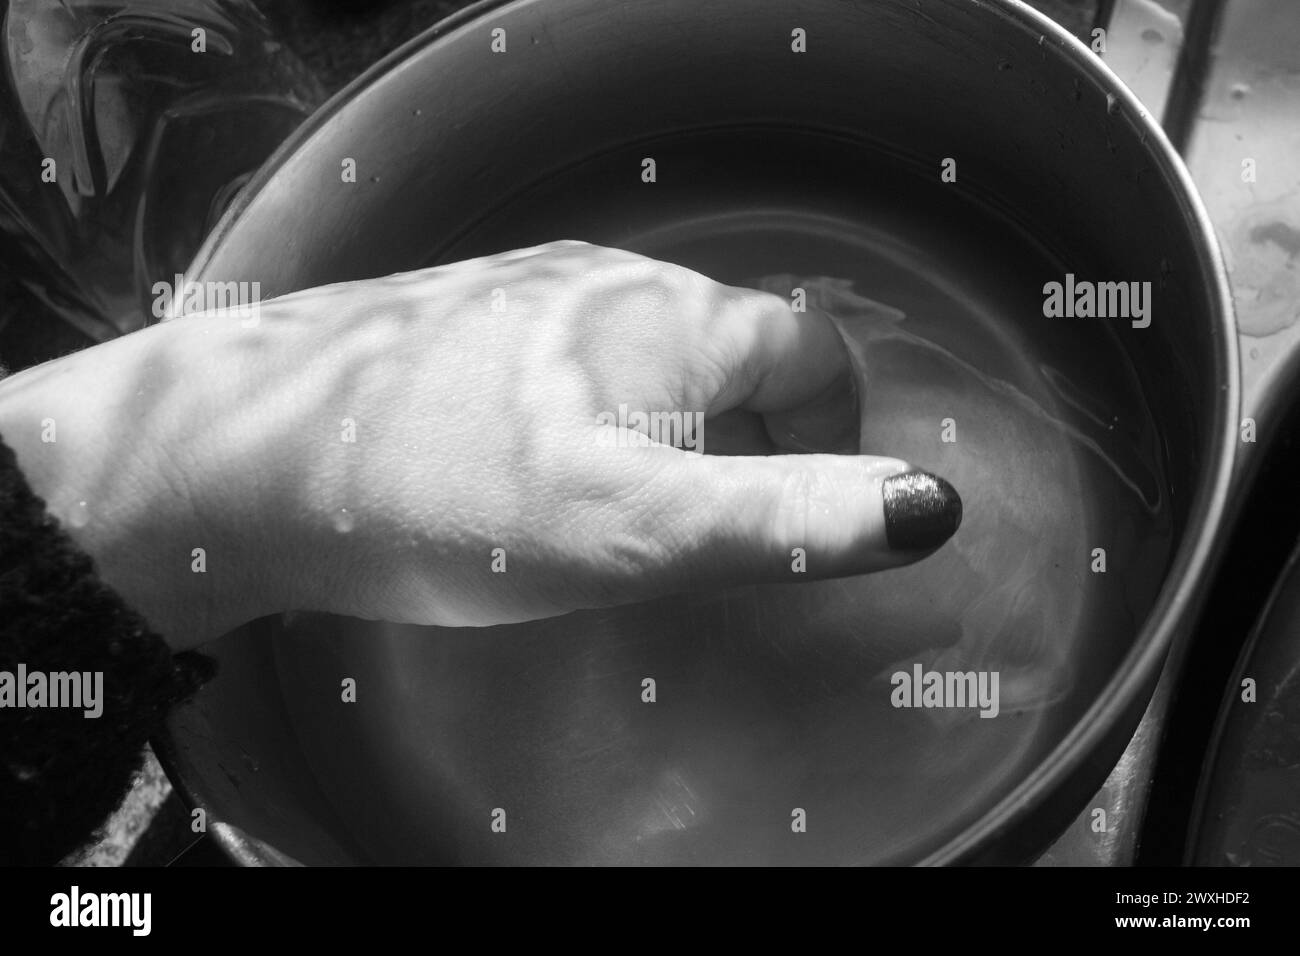 Waschen einer Hand - Schwarz-weiß-Aufnahme einer Hand im Inneren eines Metallkassers, der in Wasser mit kontrastierendem Licht und Schatten getaucht ist. Stockfoto